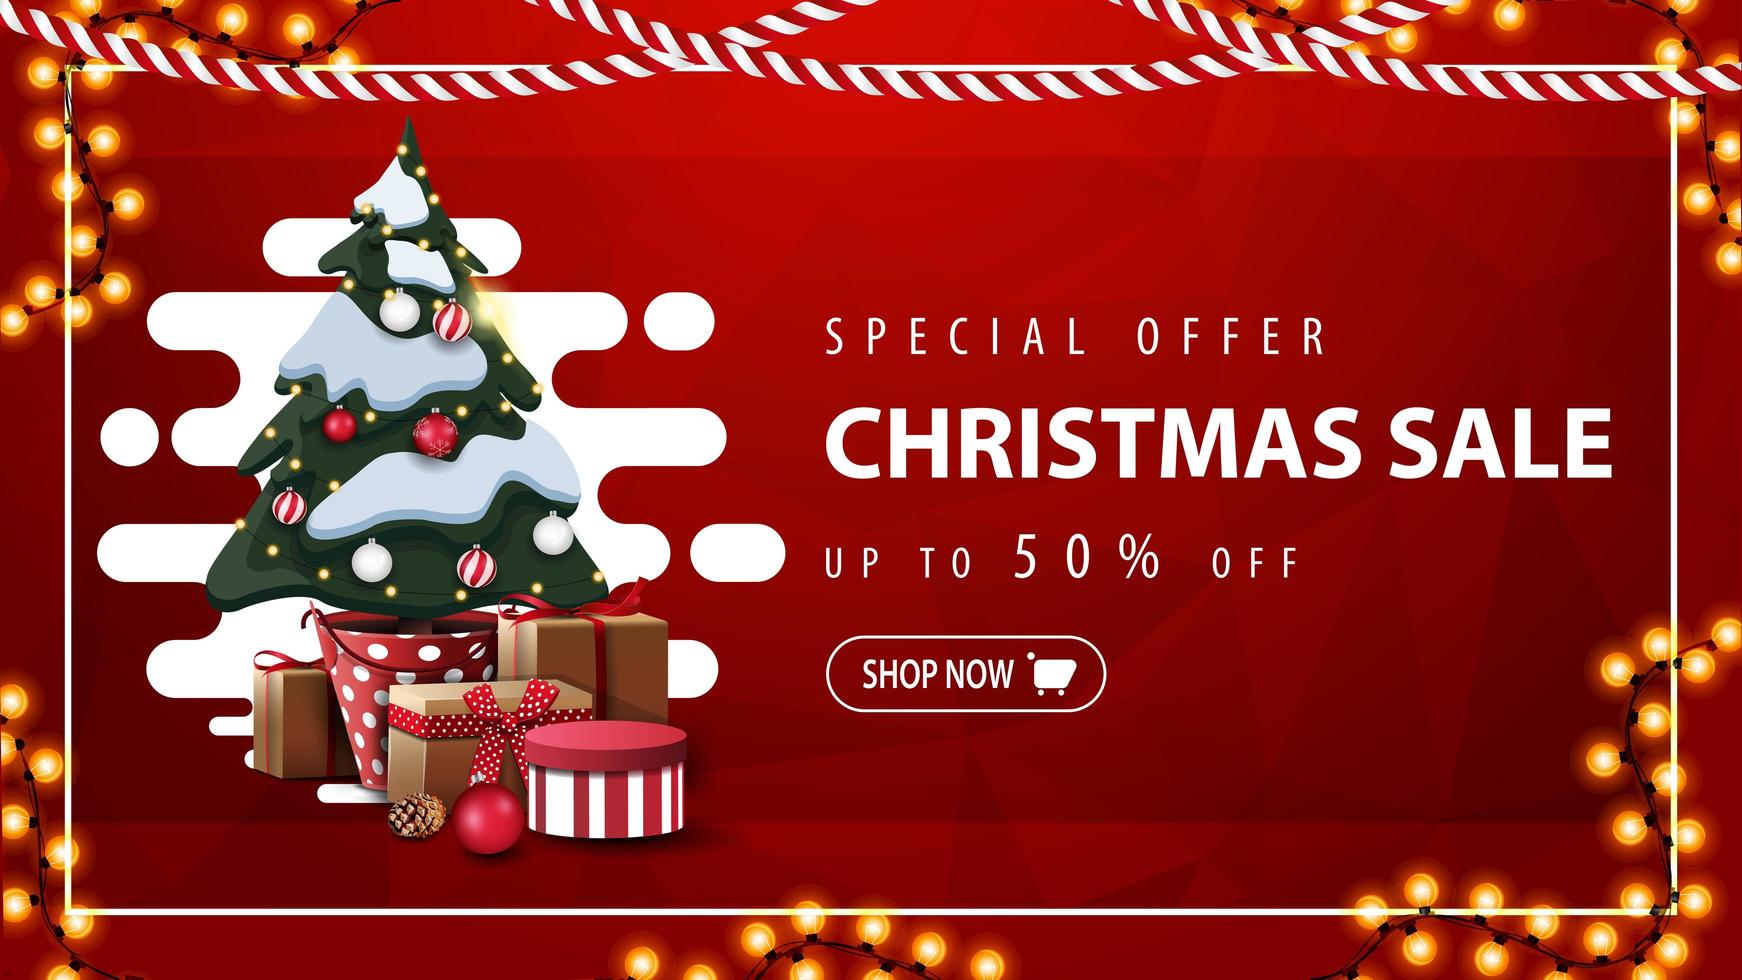 Sonderangebot, Weihnachtsverkauf, bis zu 50 Rabatt, rotes Rabattbanner mit abstrakter flüssiger Form, Girlande und Weihnachtsbaum in einem Topf mit Geschenken vektor